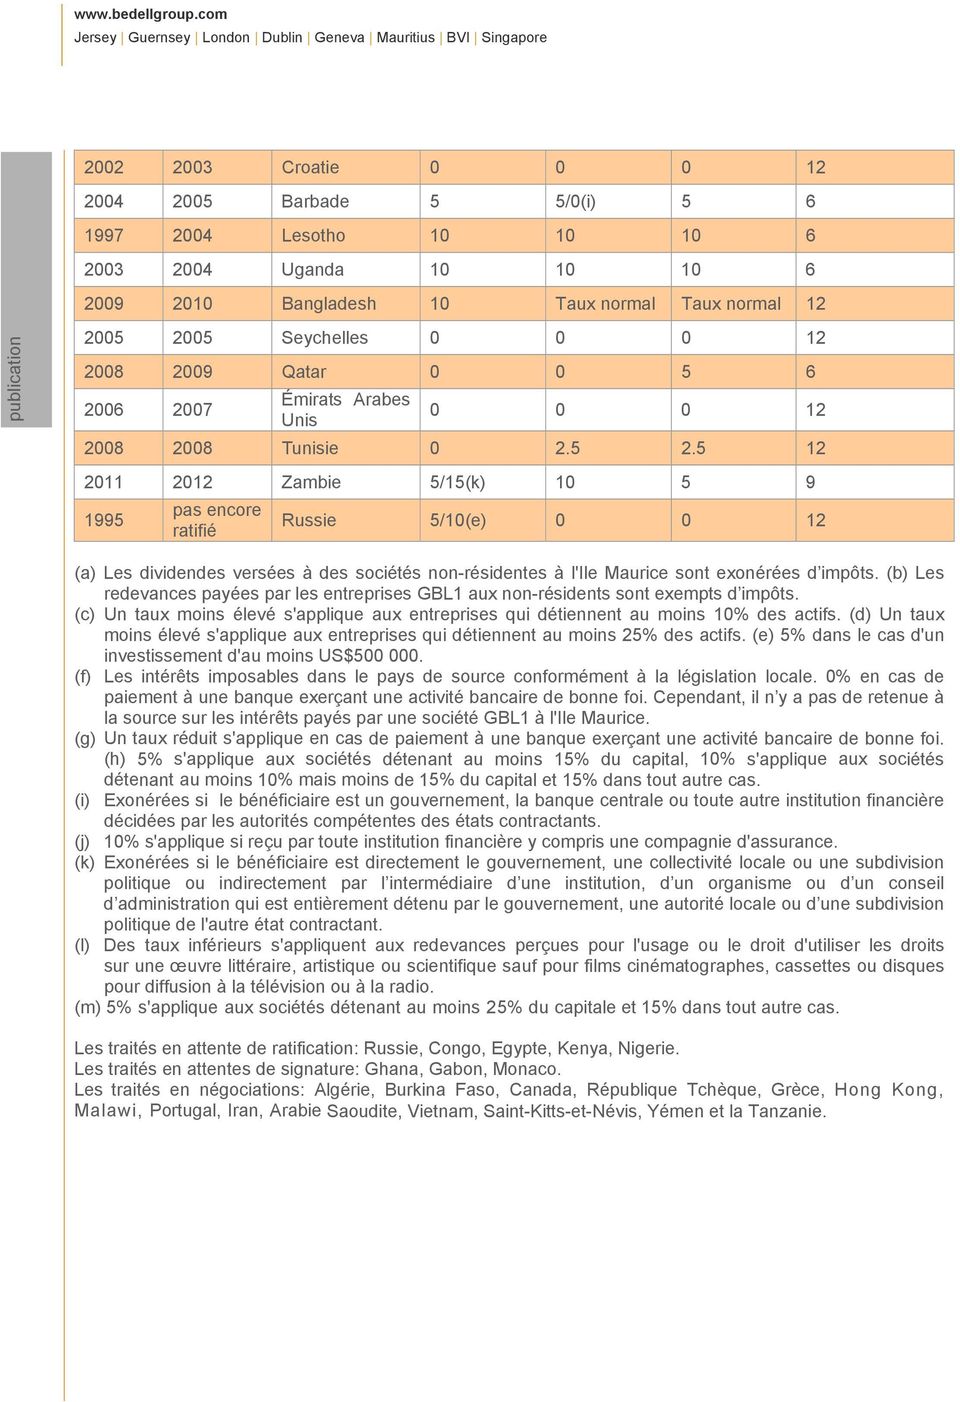 5 12 2011 2012 Zambie 5/15(k) 10 5 9 1995 pas encore ratifié Russie 5/10(e) 0 0 12 (a) Les dividendes versée s à des sociétés non-résidentes à l'ile Maurice sont exonérées d impôts.